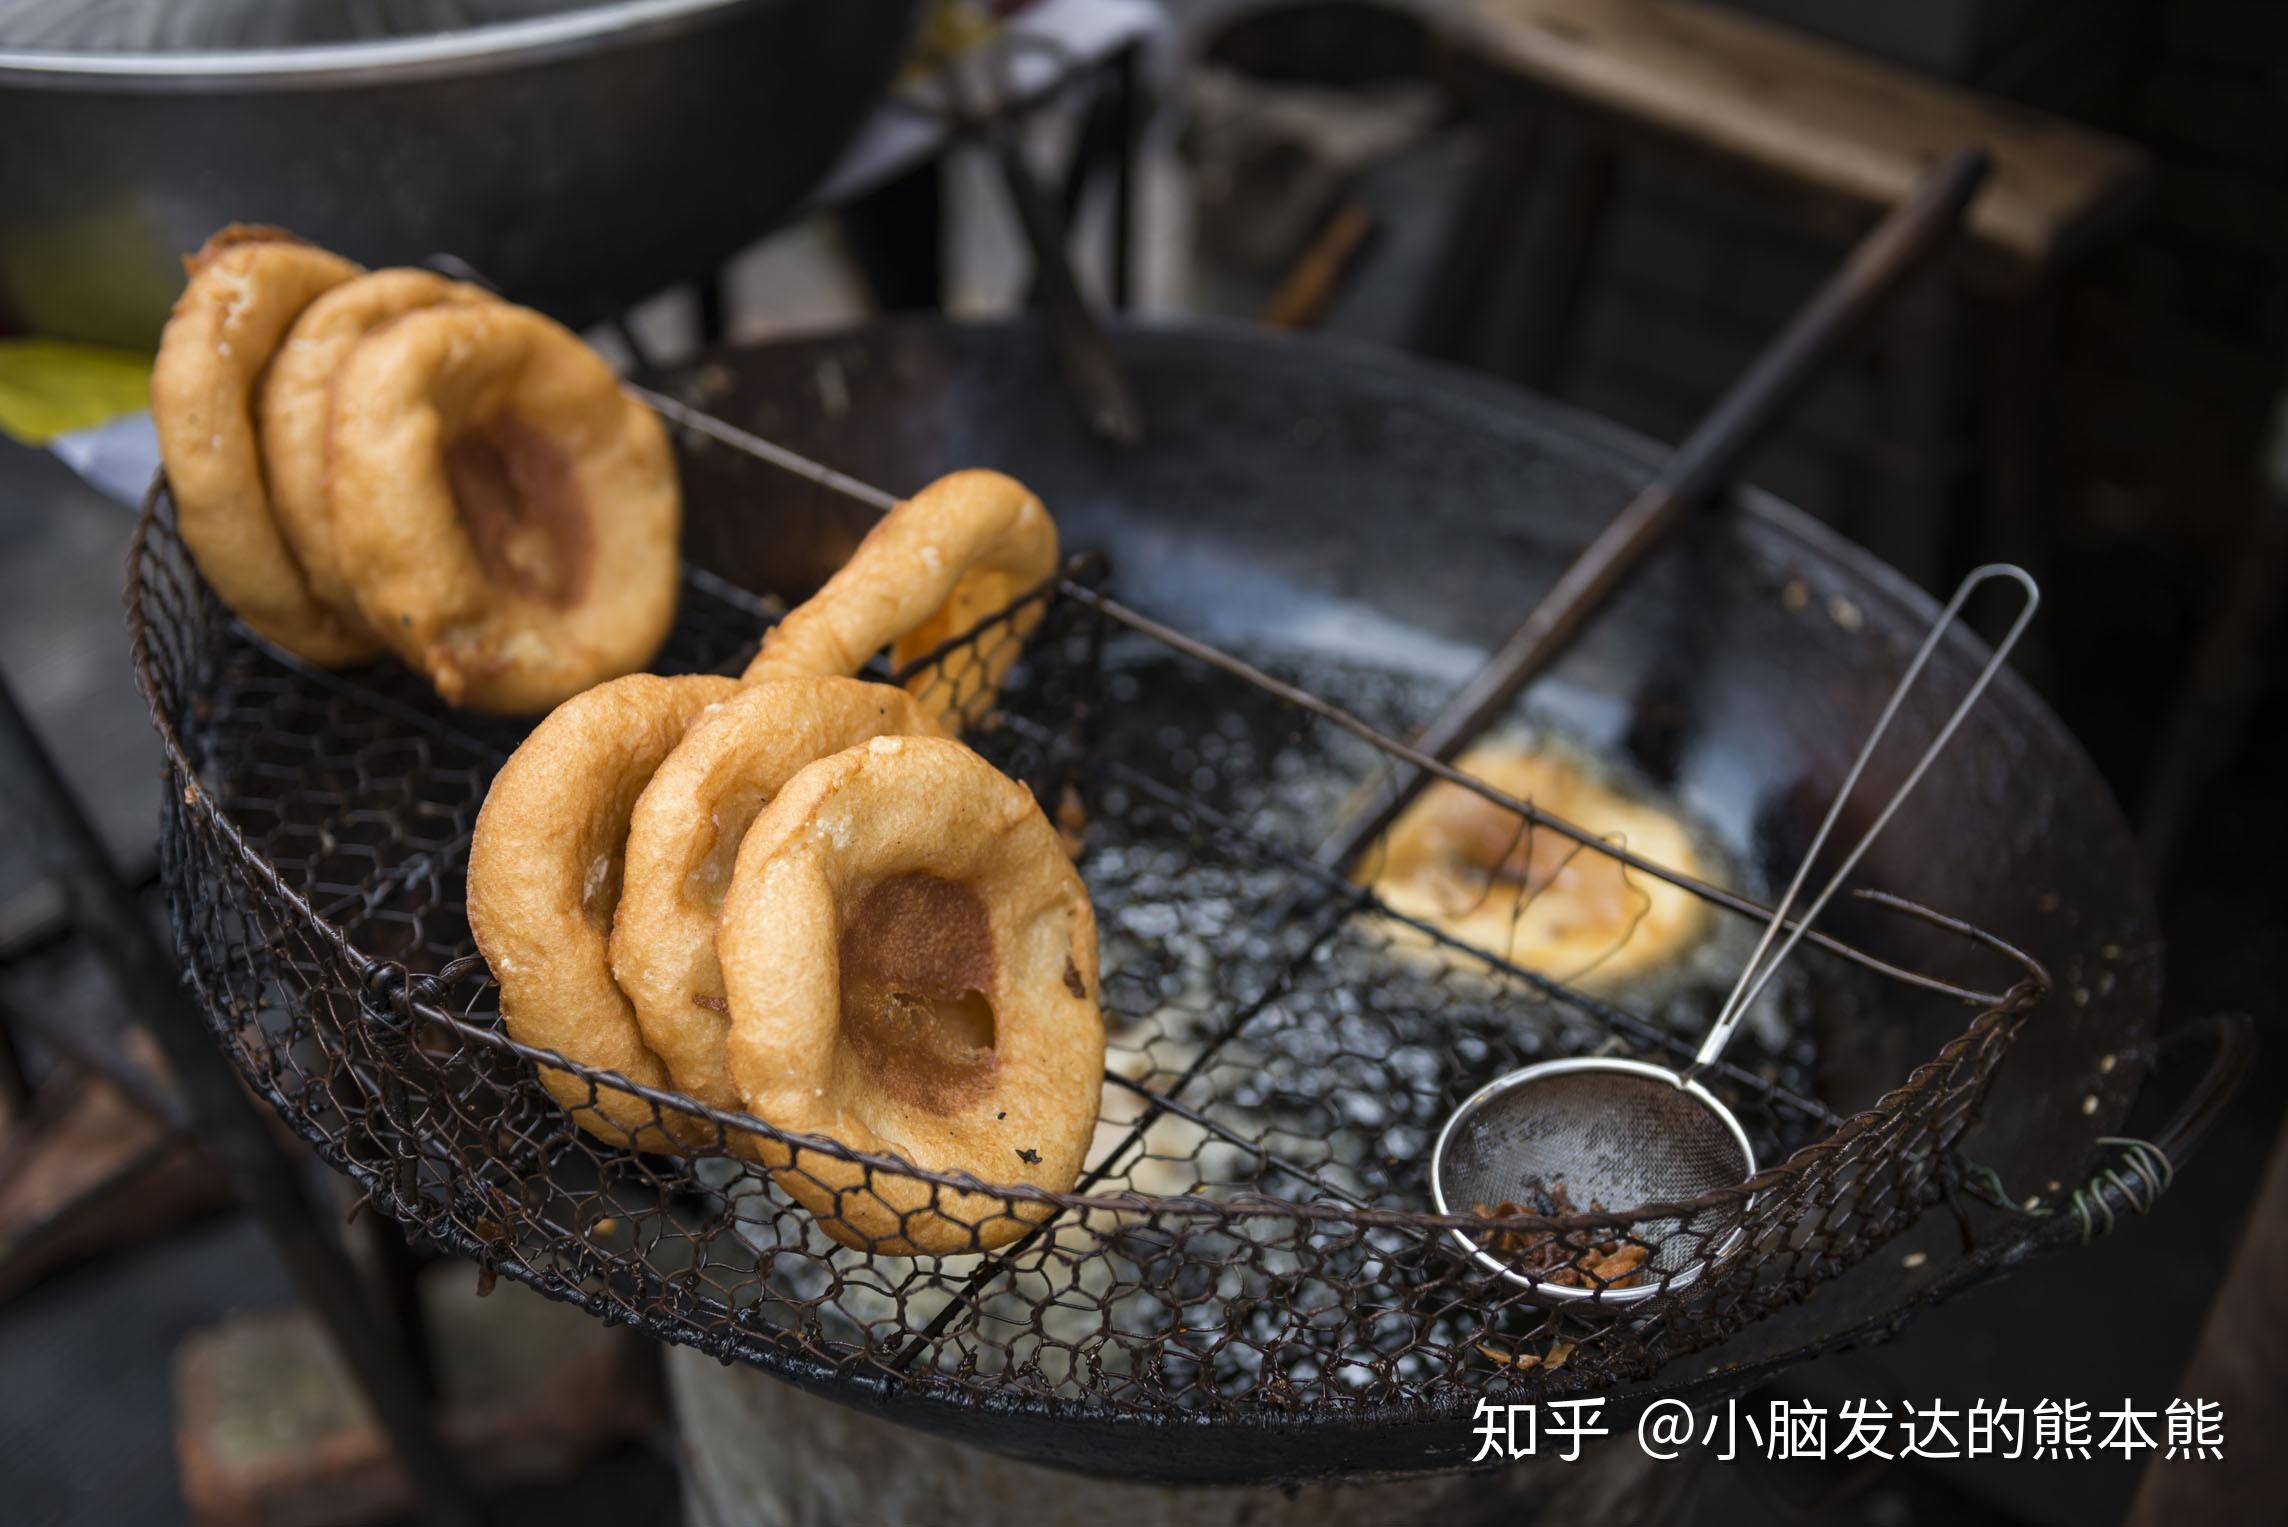 来武汉旅游一定要体验一次武汉的早餐文化— —“过早”。 - 武汉热线